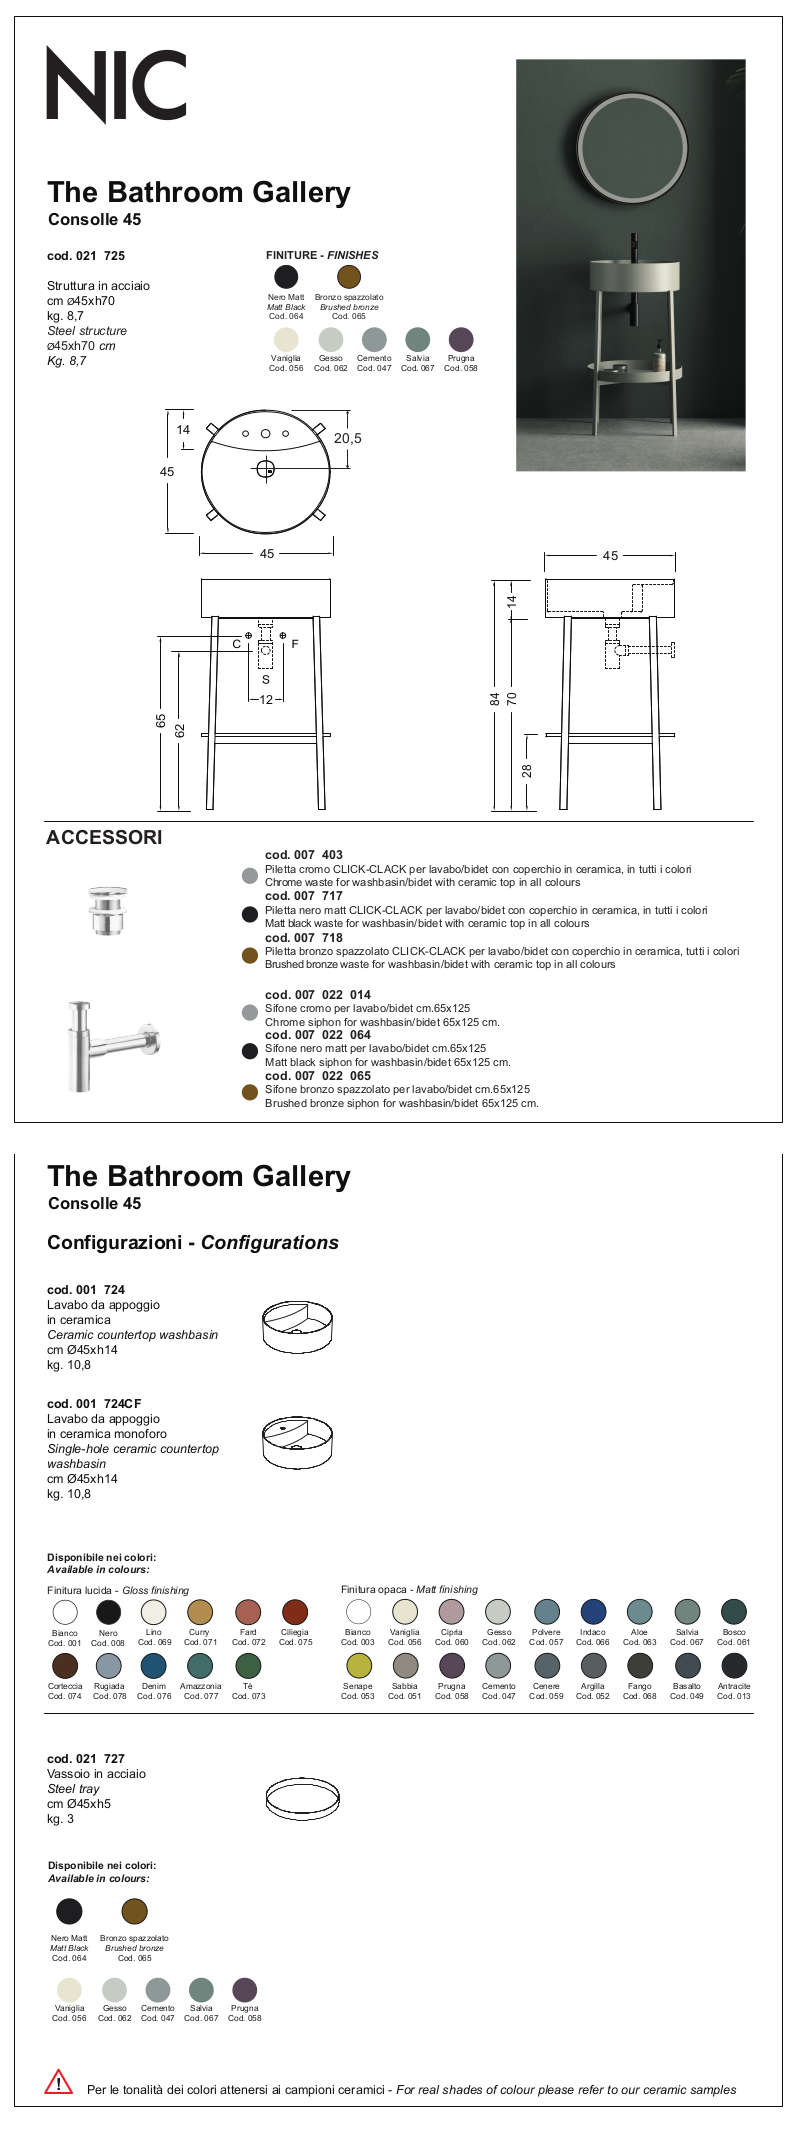 fiche technique meuble console de salle de bain 45 nic design